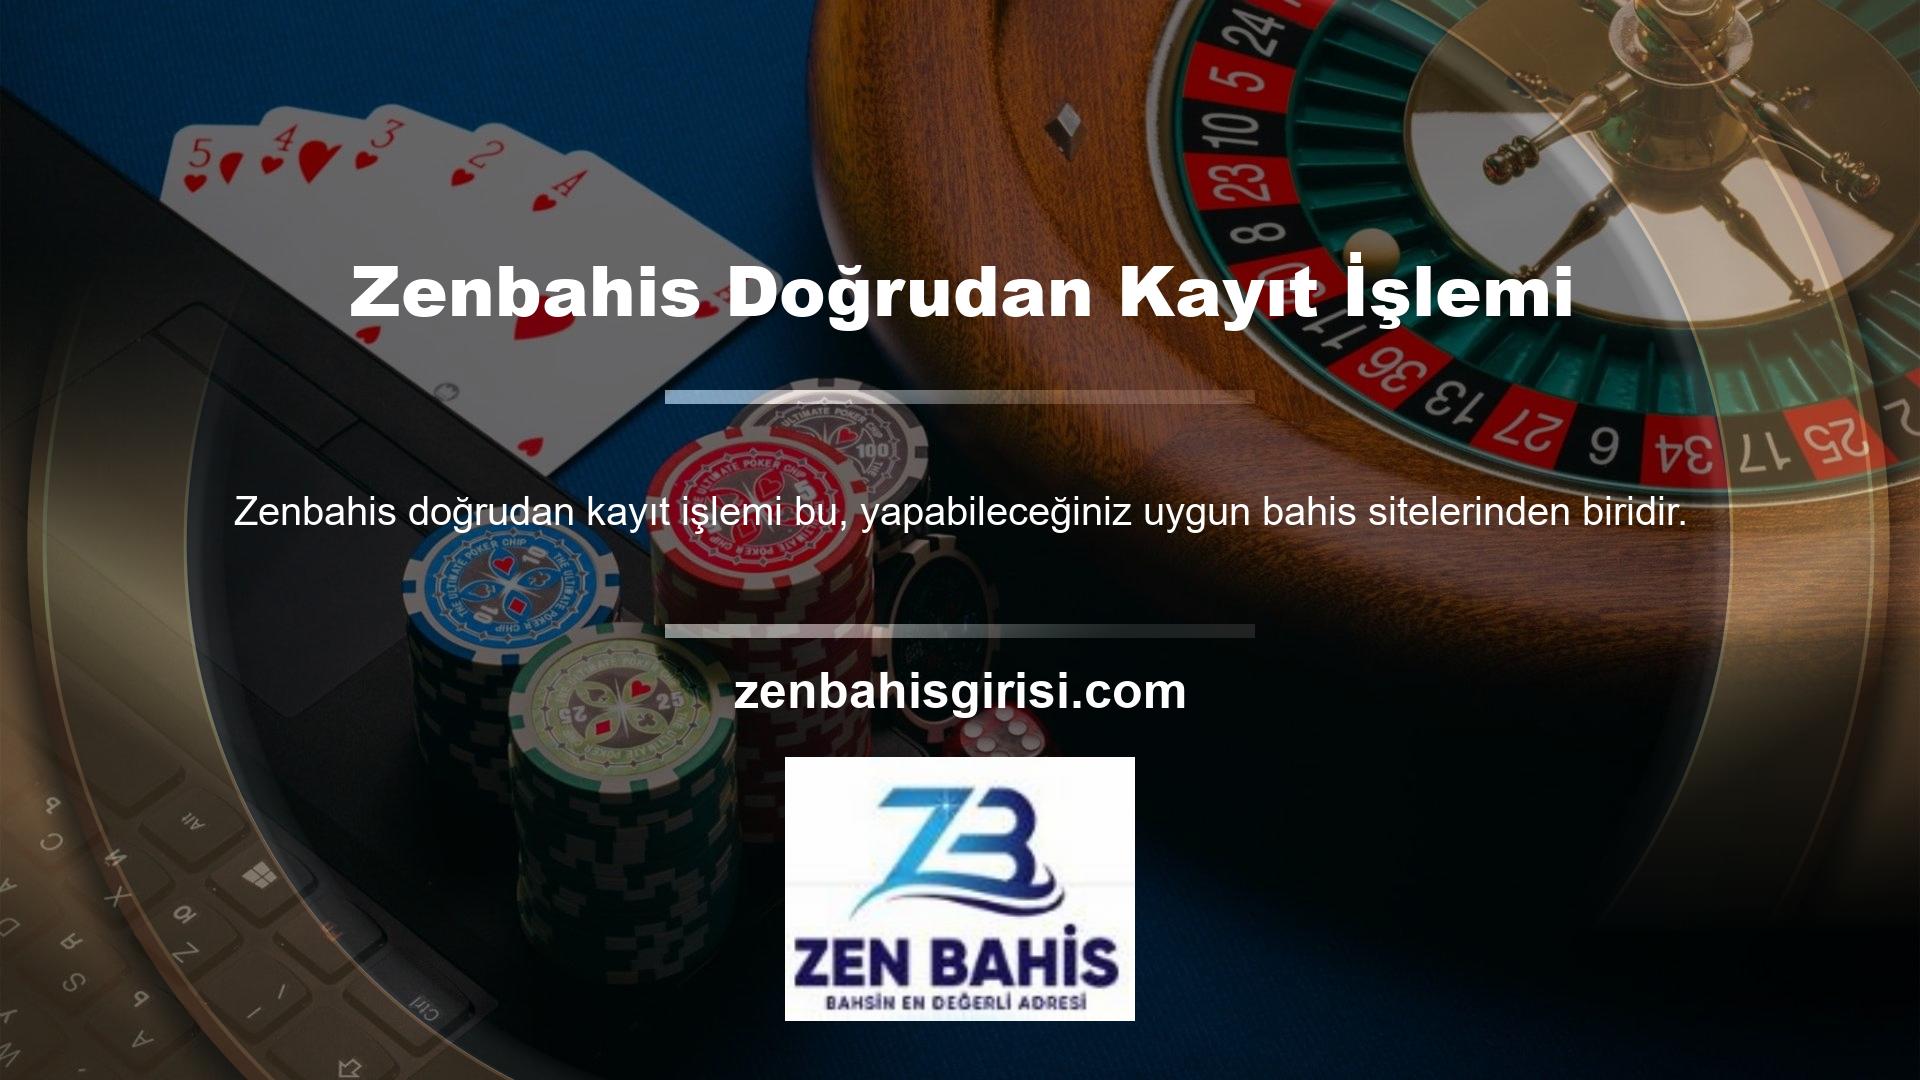 Kârlı poker oyunlarının yanı sıra Zenbahis, canlı dosyaları güvenli bir şekilde aktarmak için canlı akış özellikleri sunan birkaç siteden biridir